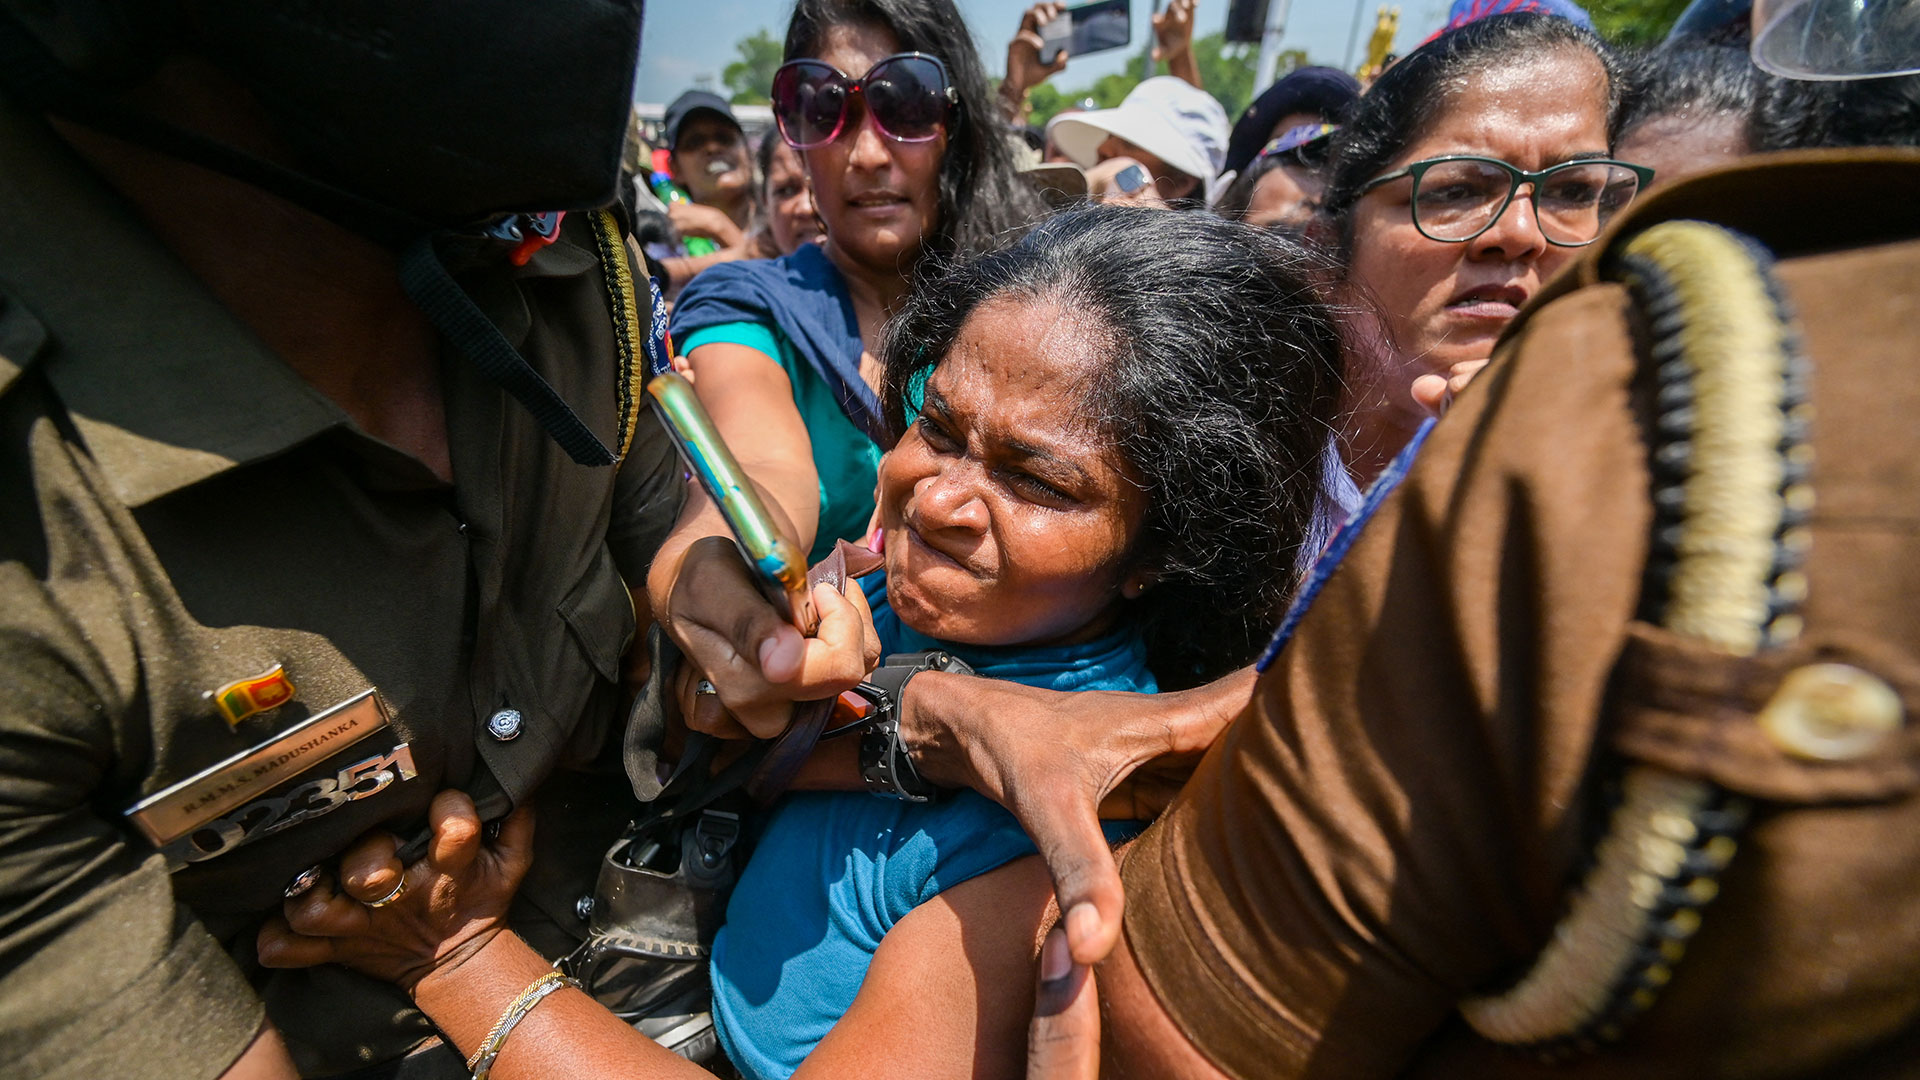 Los manifestantes antigubernamentales se pelean con la policía durante una protesta organizada por el grupo "Mujeres por los derechos" con motivo del Día Internacional de la Mujer contra las reformas fiscales propuestas y la crisis económica del país, cerca del edificio del parlamento en Colombo, Sri Lanka.